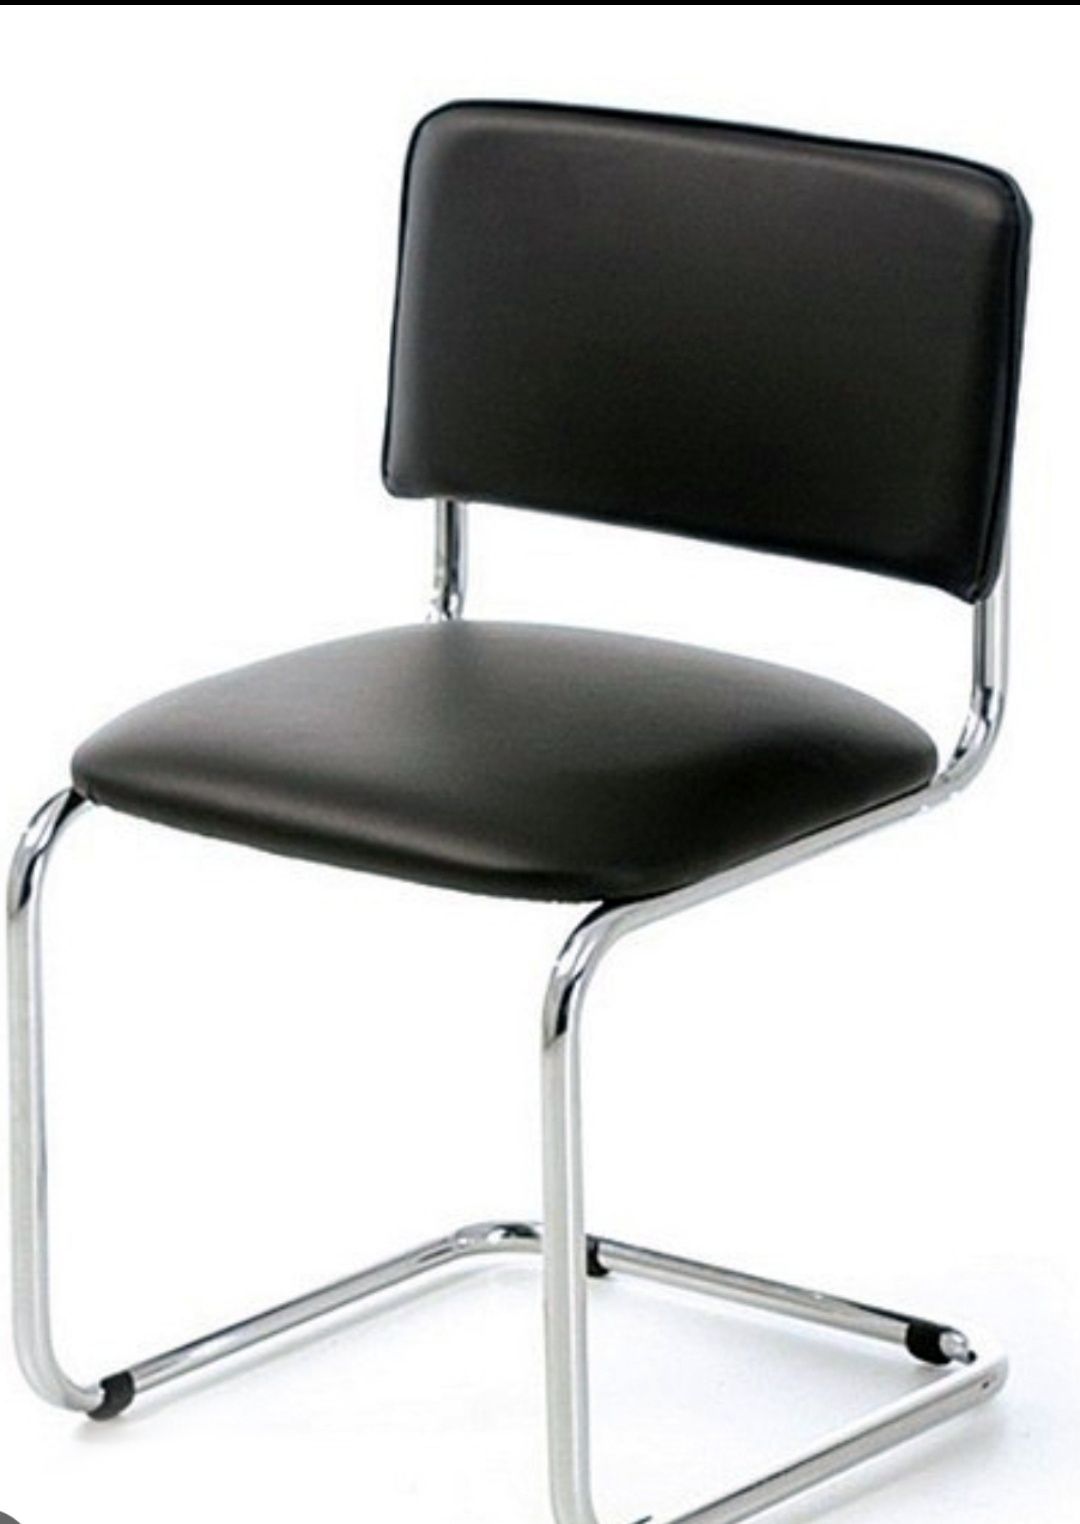 Офисный стулья Нолан оптовая цена